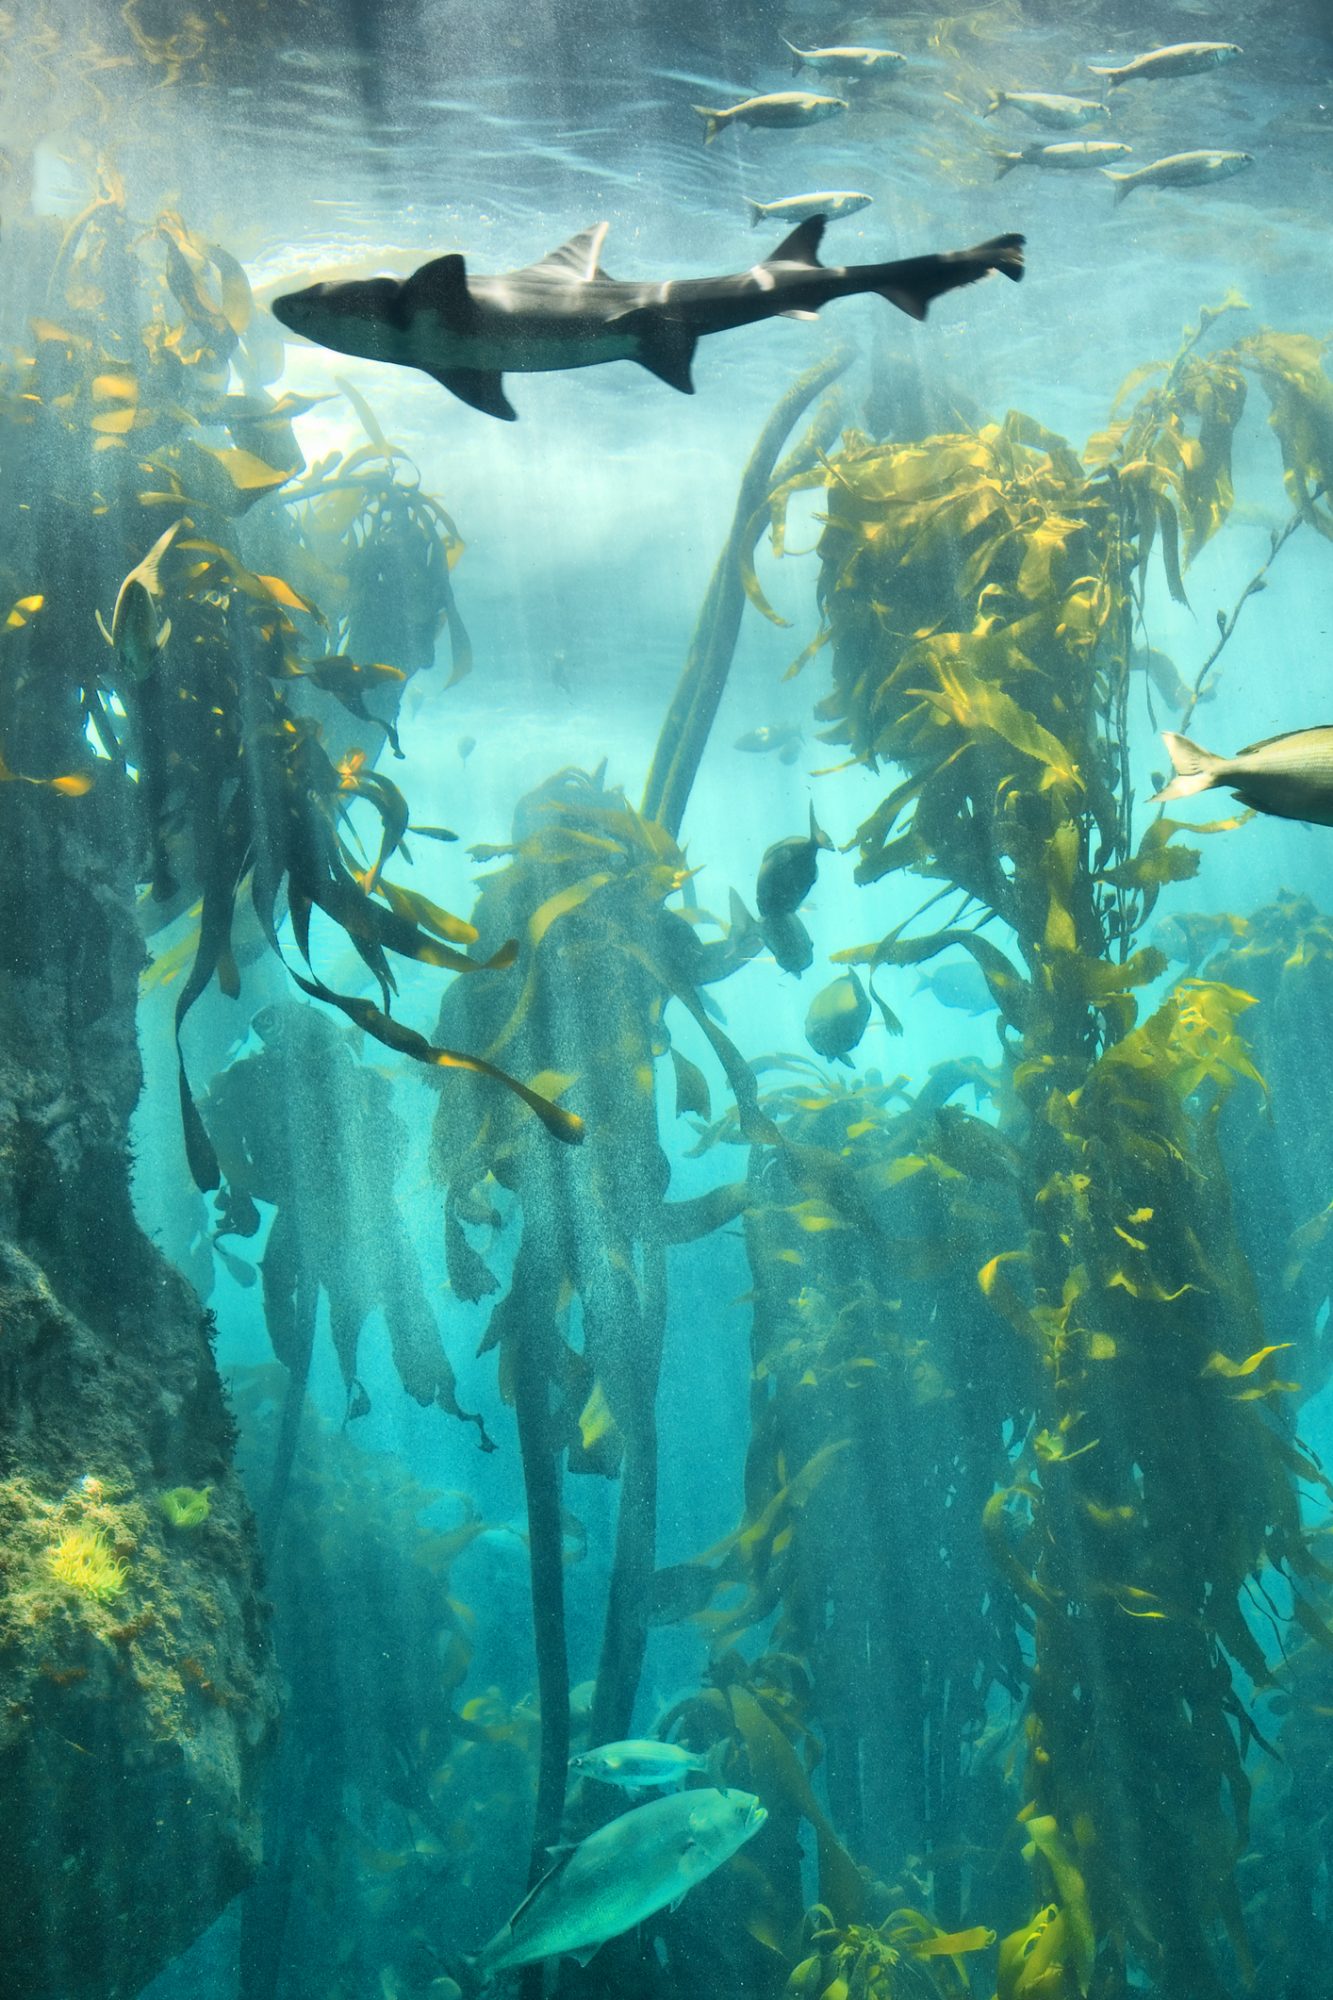 Big fish in underwater kelp forest